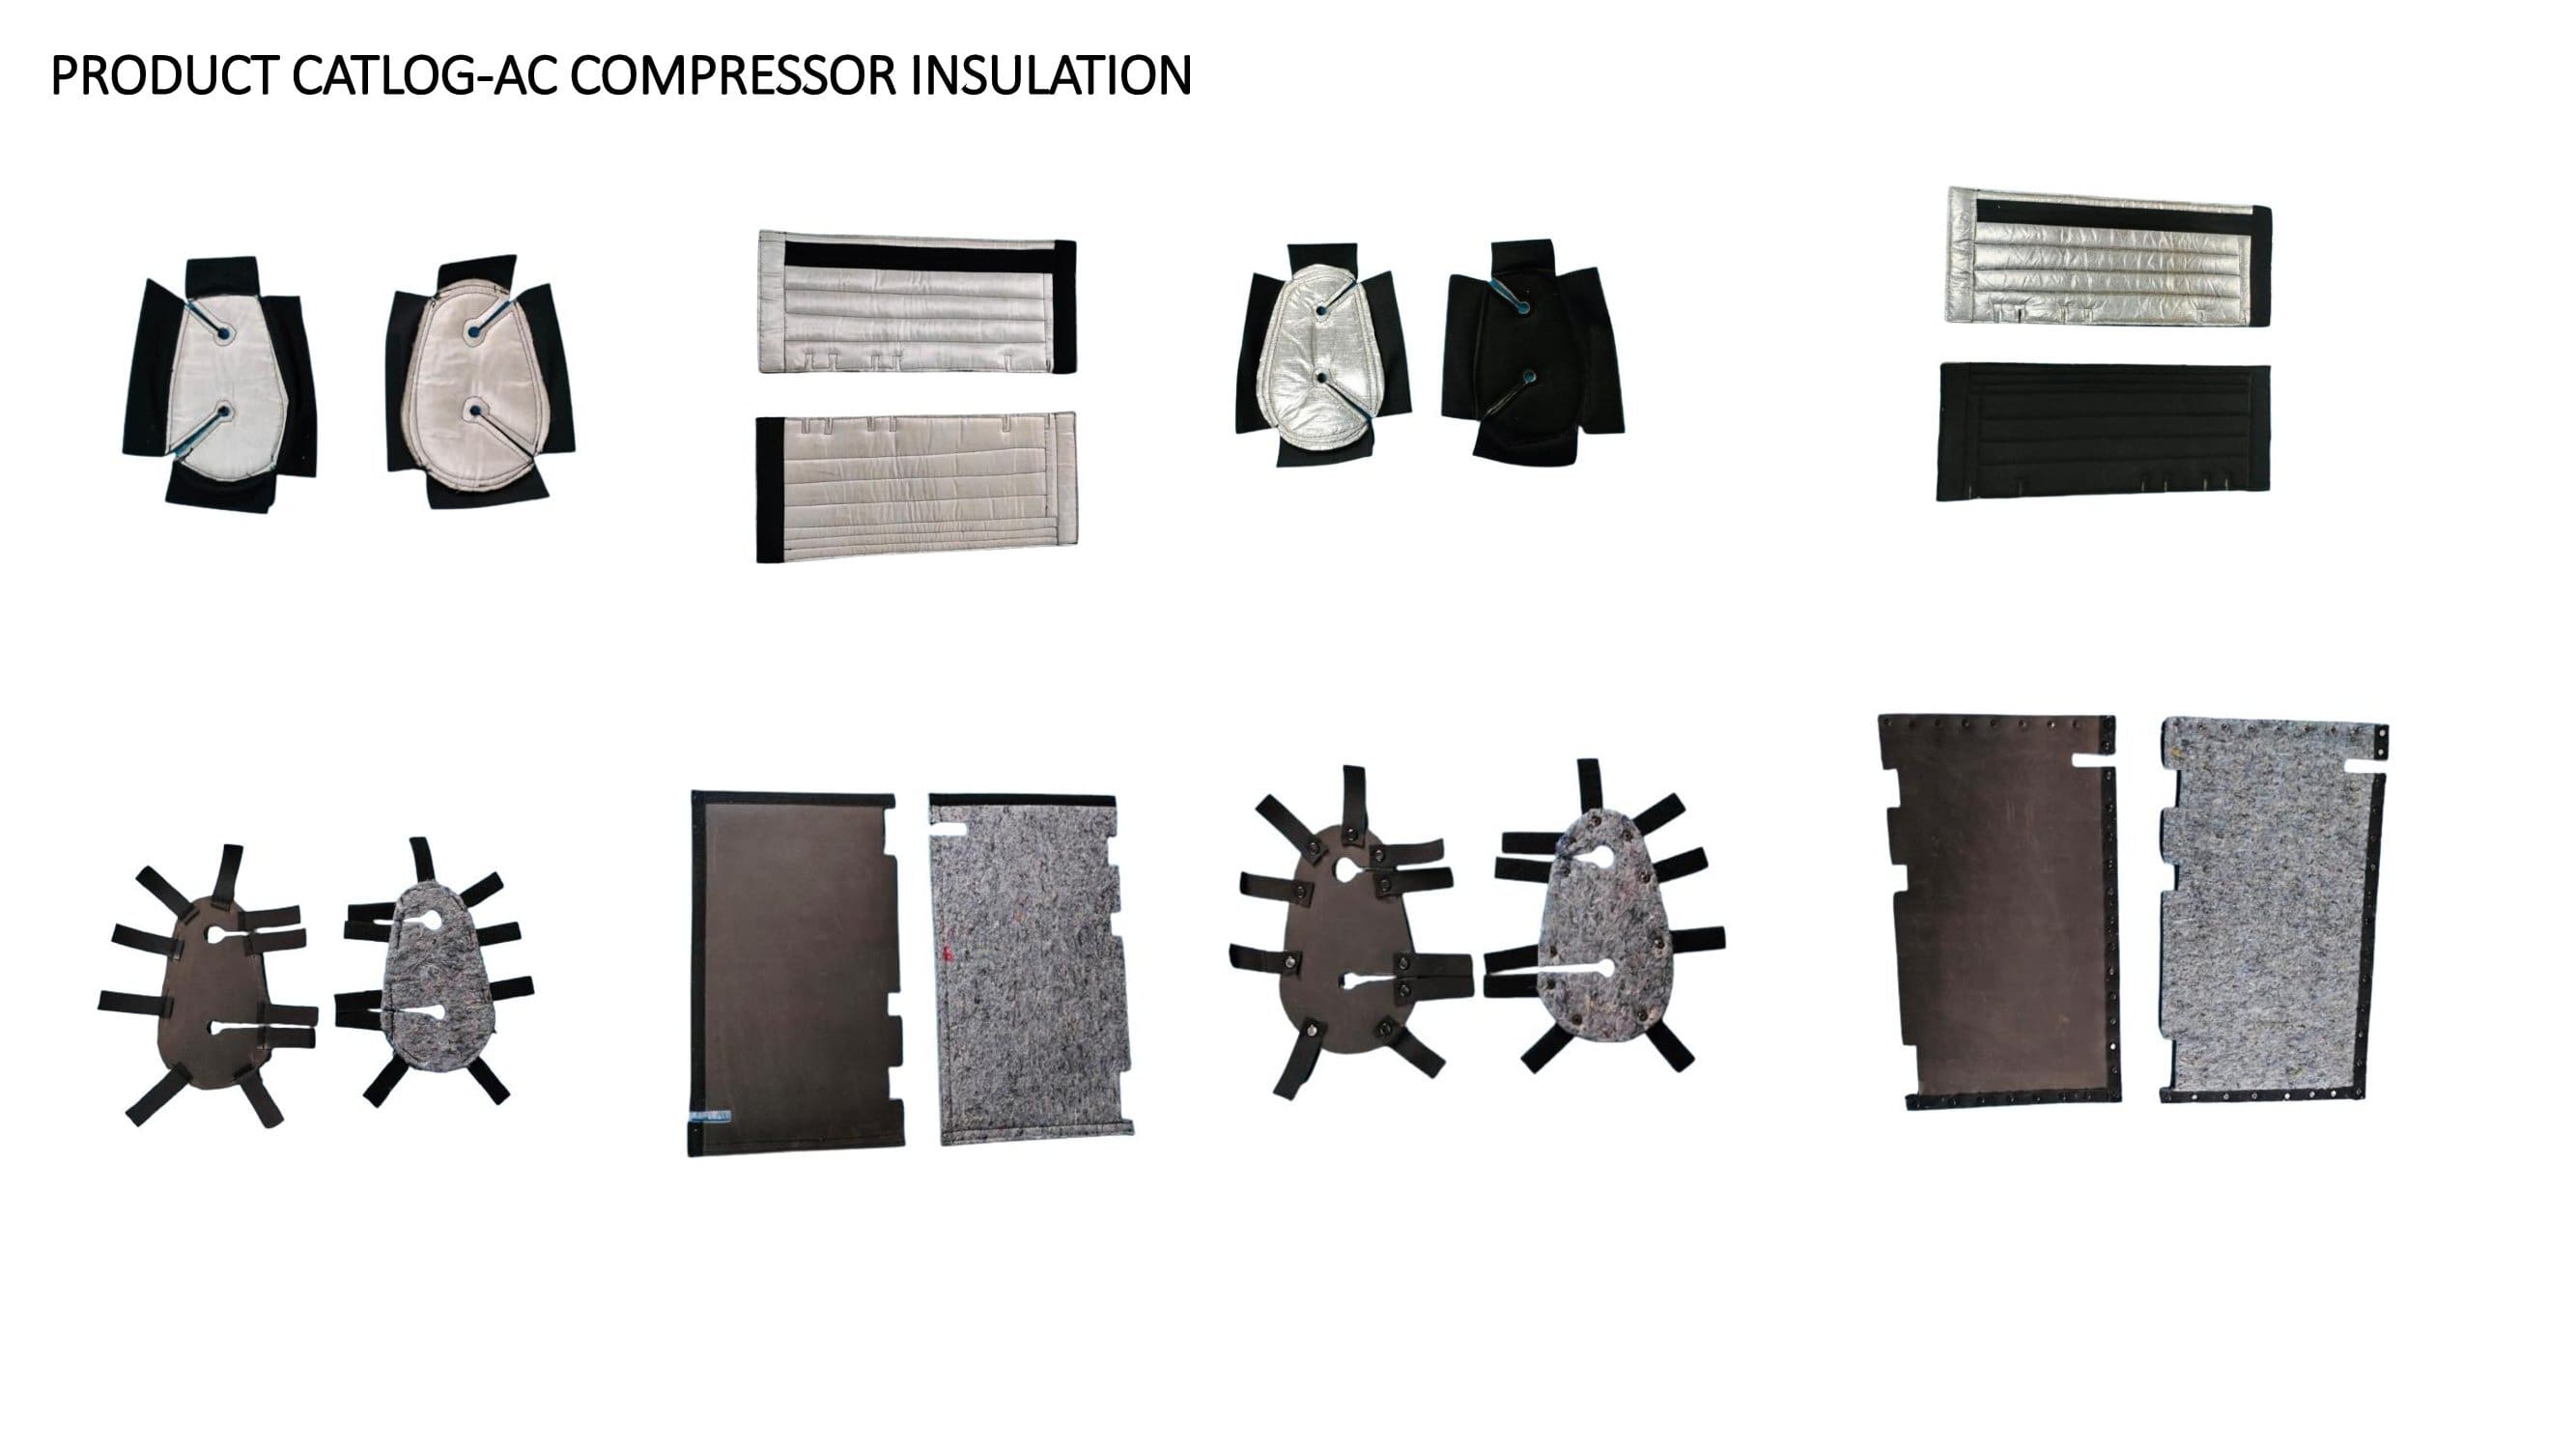 AC Compressor Insulation